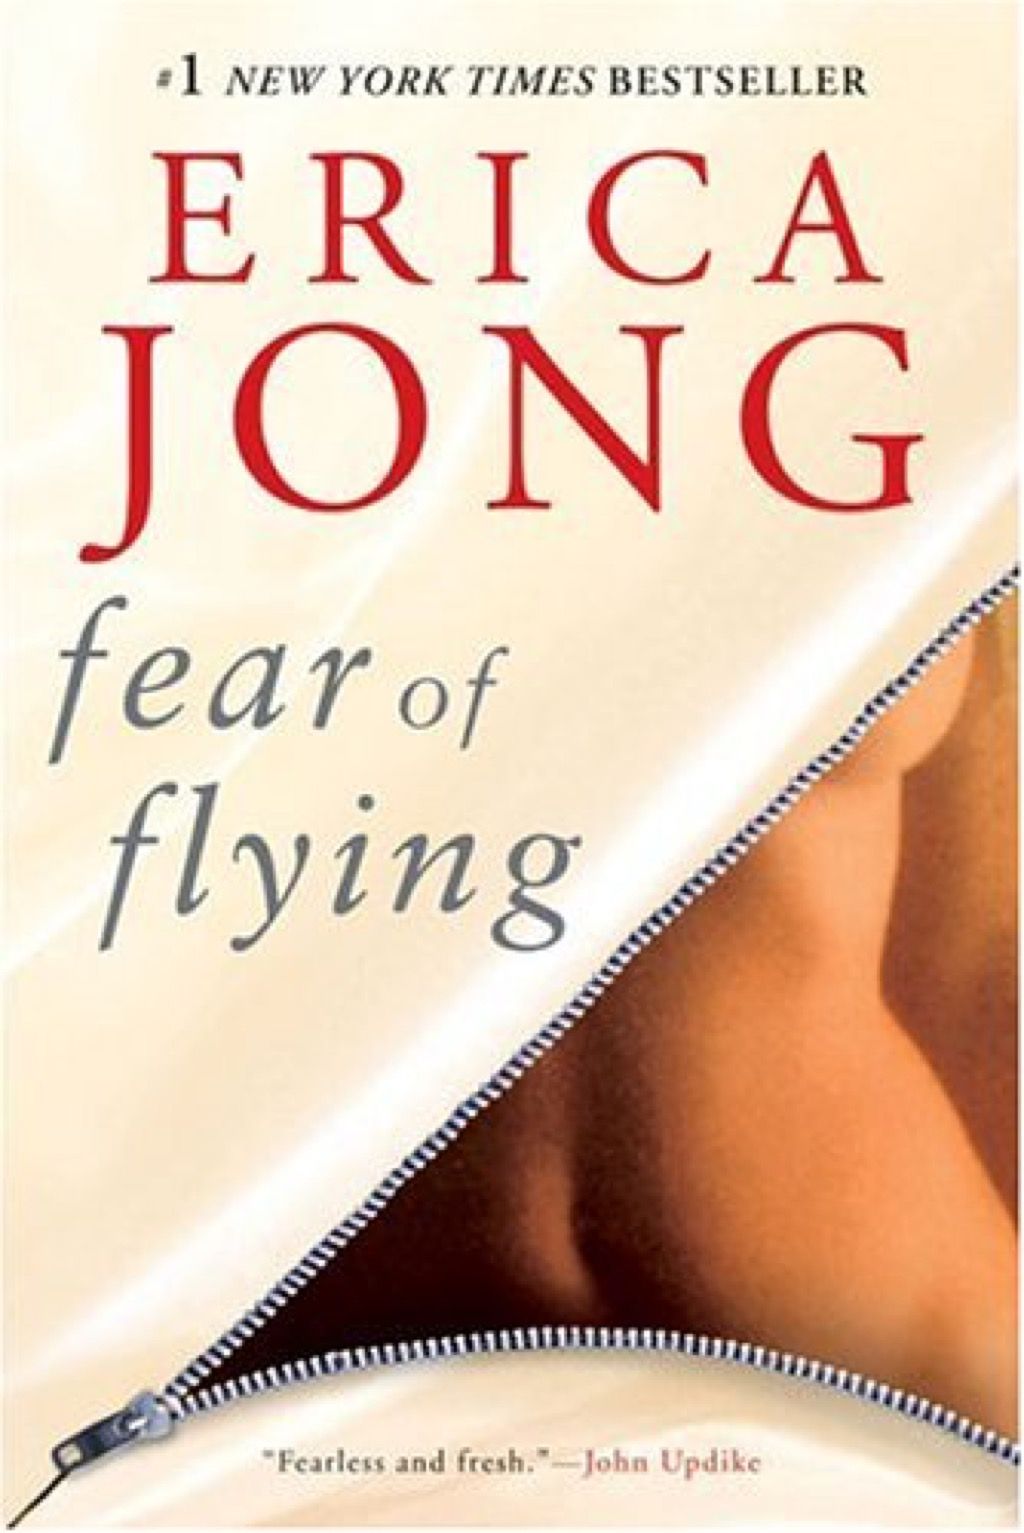 Teama de a zbura cărțile pe care fiecare femeie ar trebui să le citească în anii 40 de ani